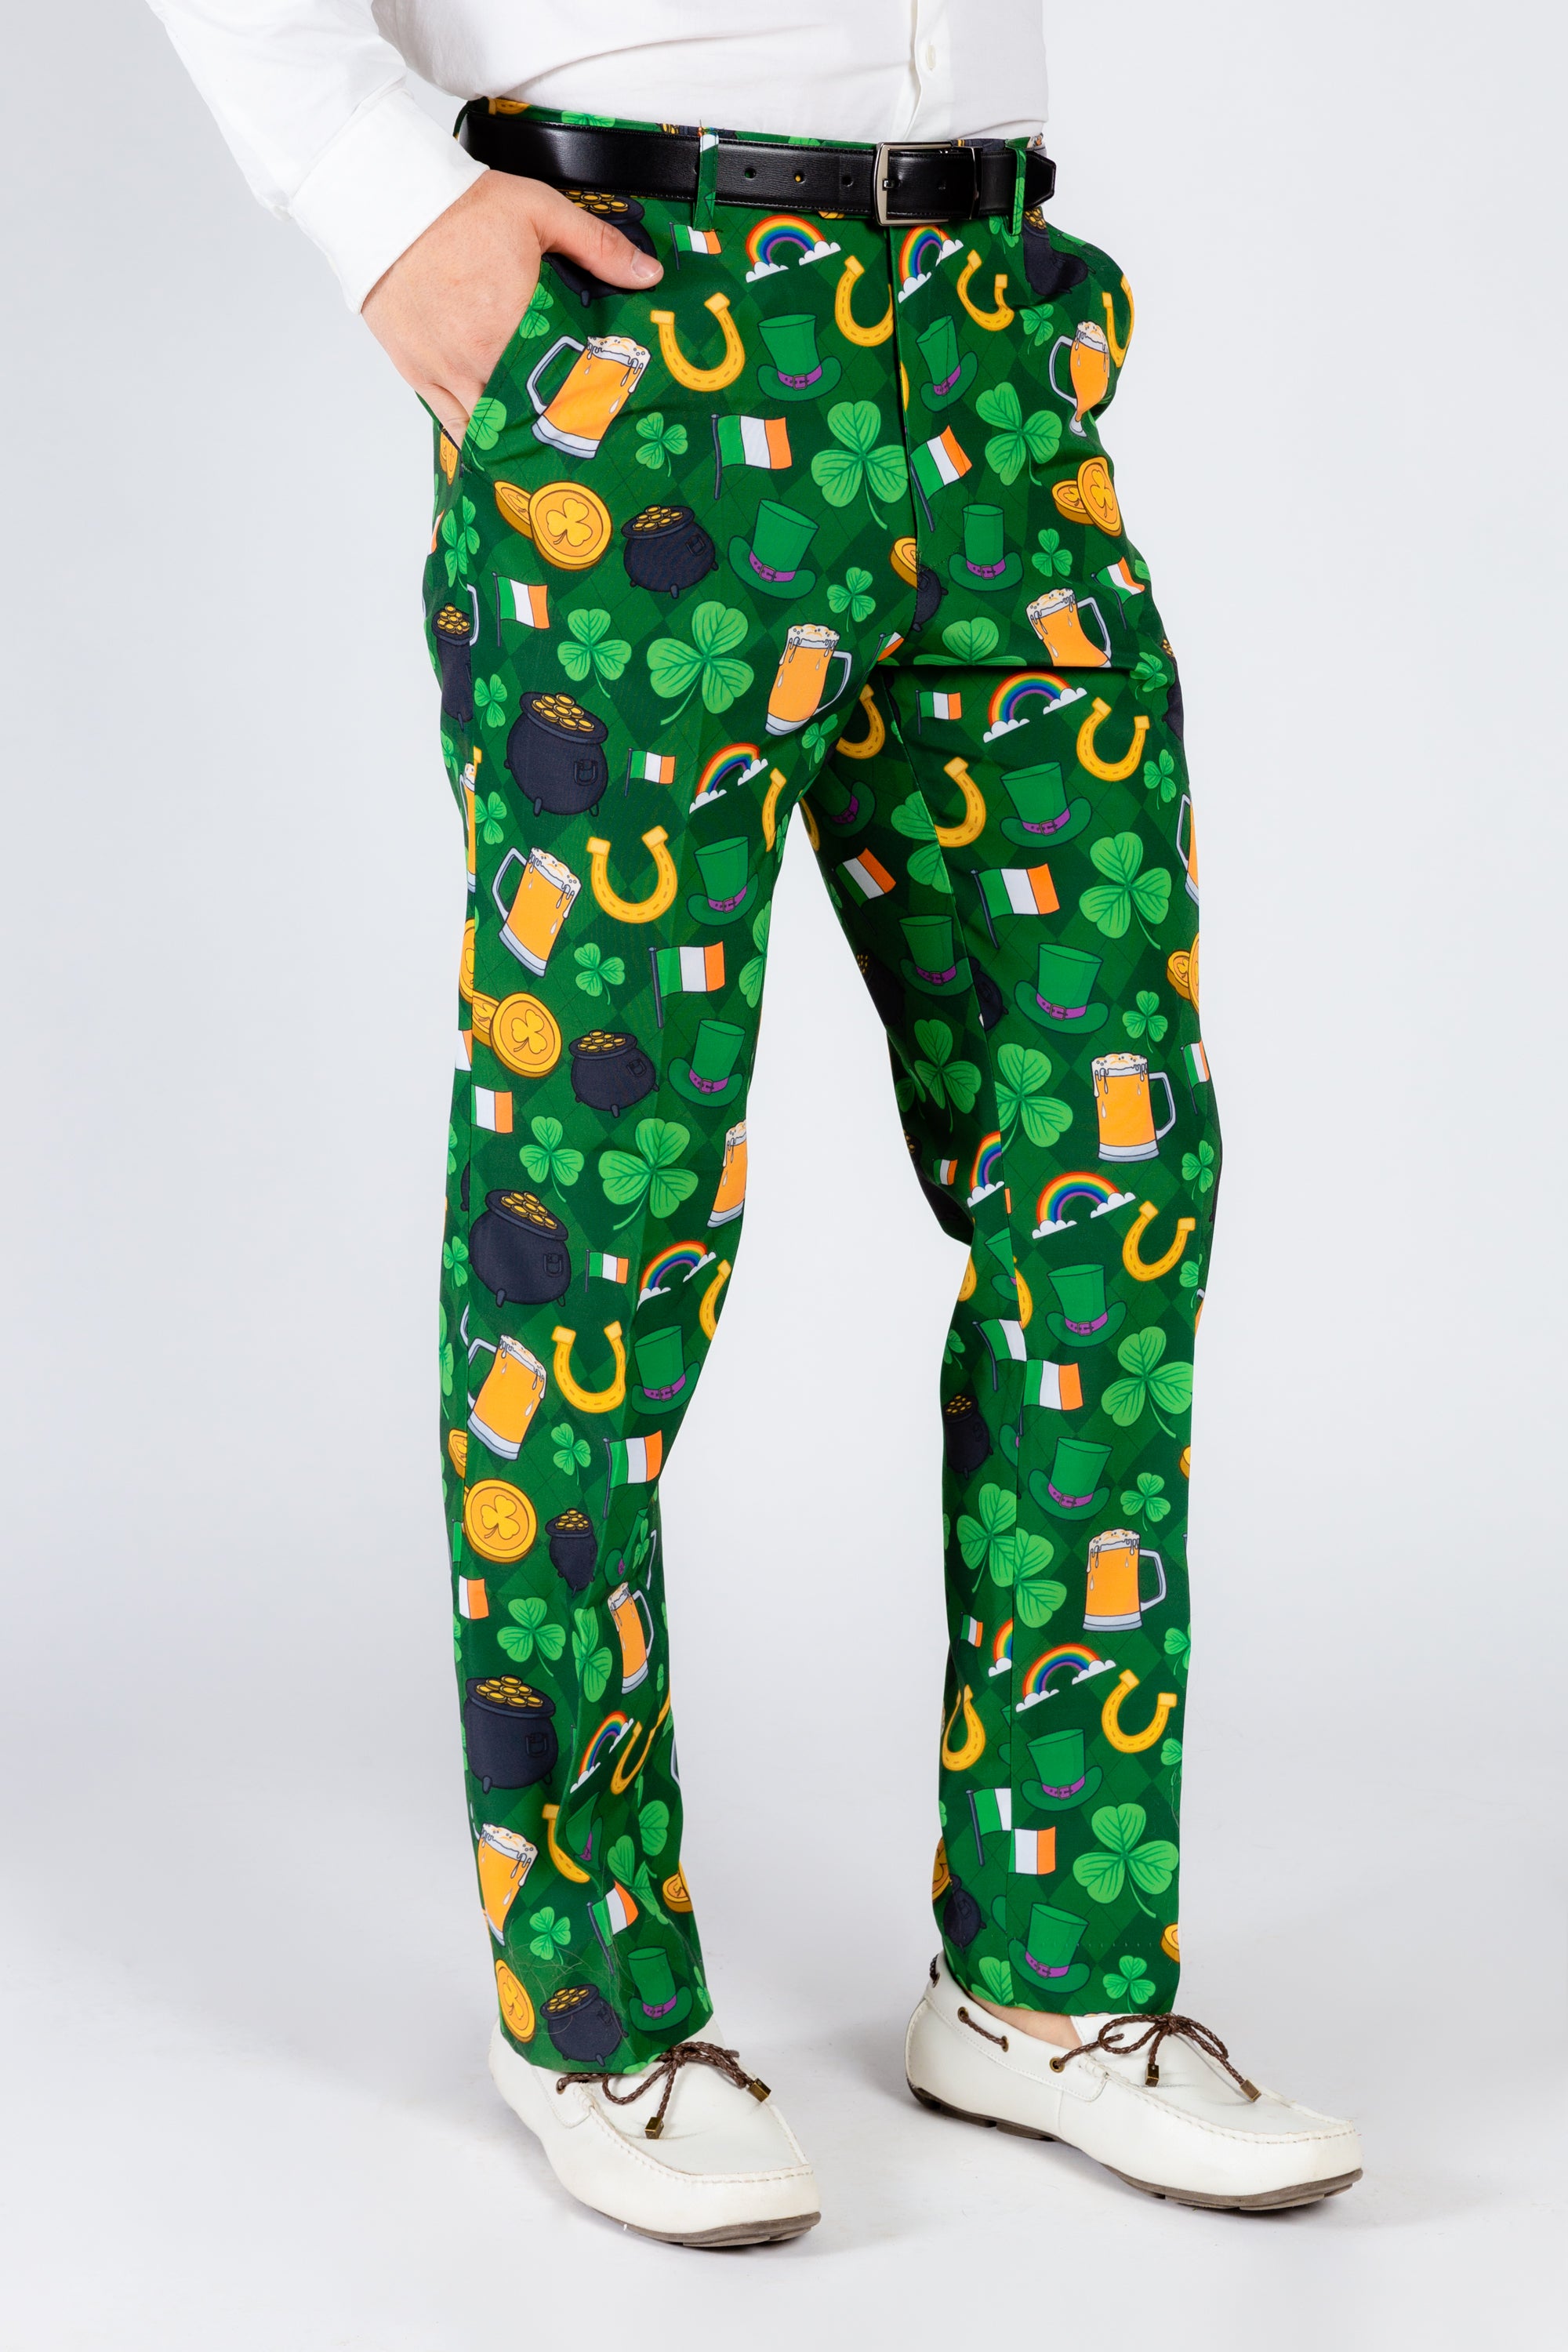 St. Patrick's Day Print Dress Pants | St. Pat's Gluttony